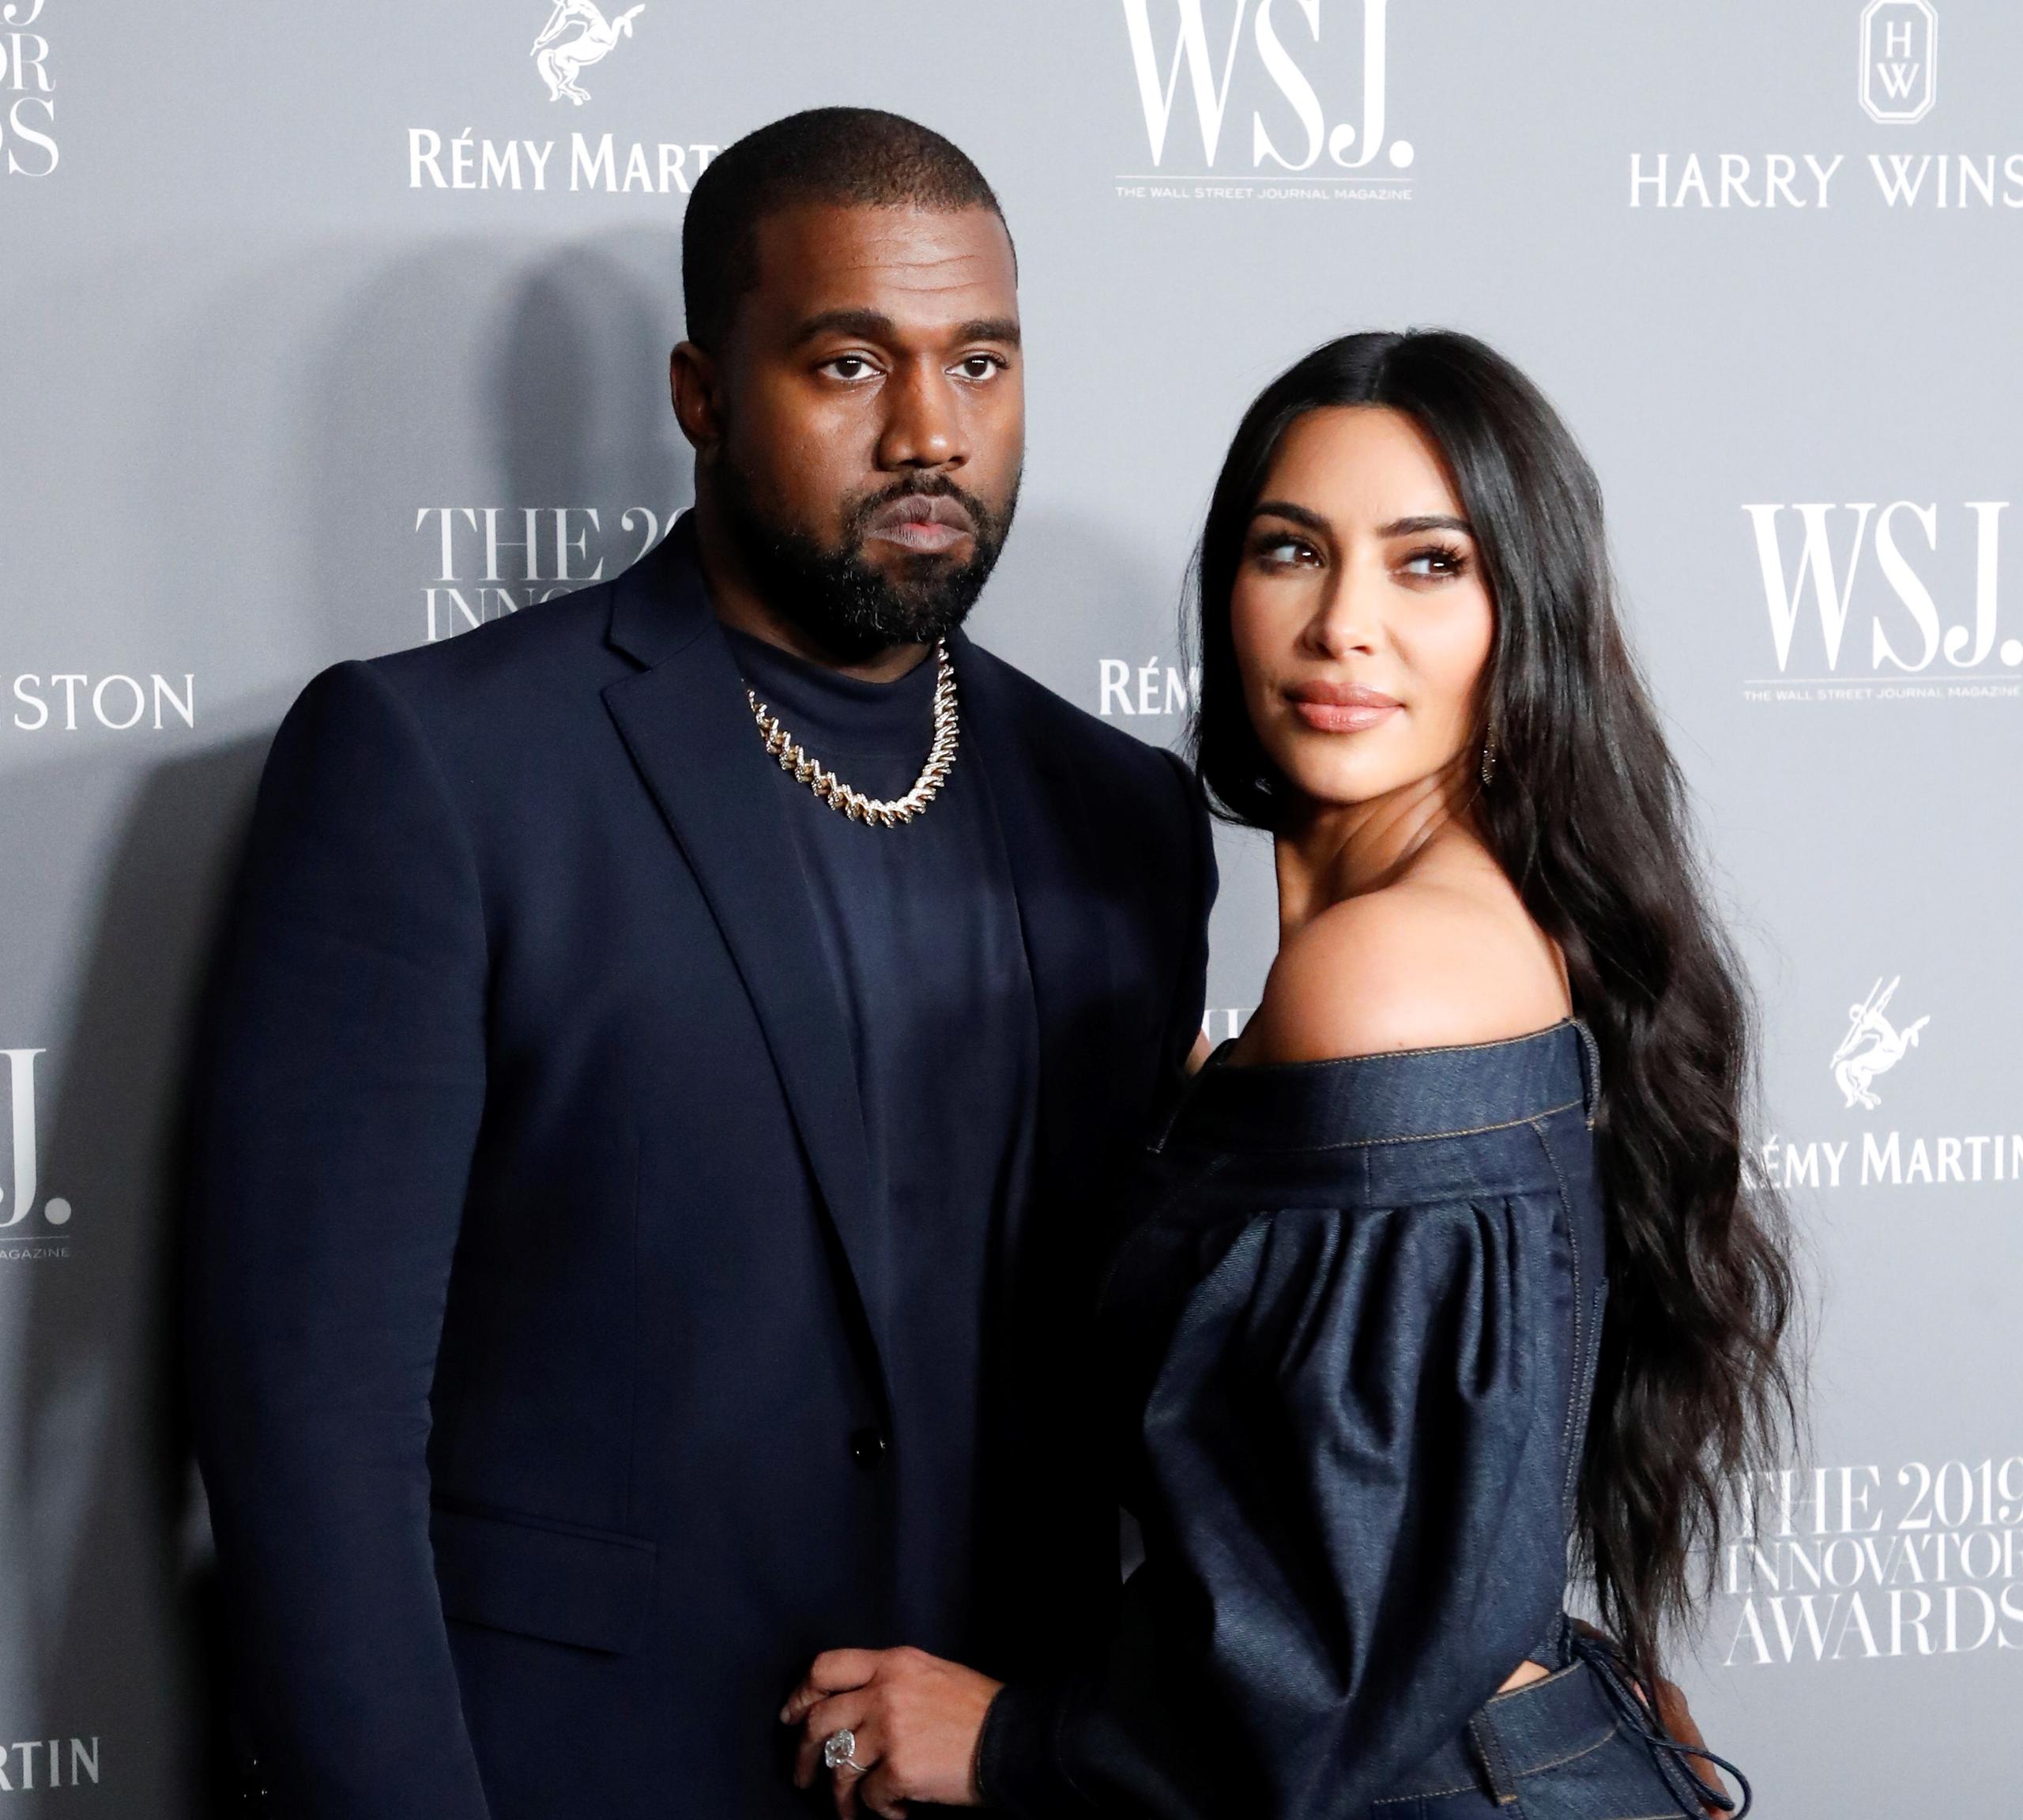 En sus últimas semanas, Kanye West, quien lleva separado de Kim Kardashian desde febrero de 2021, se vio paseando por las calles de Los Ángeles con una nueva acompañante.